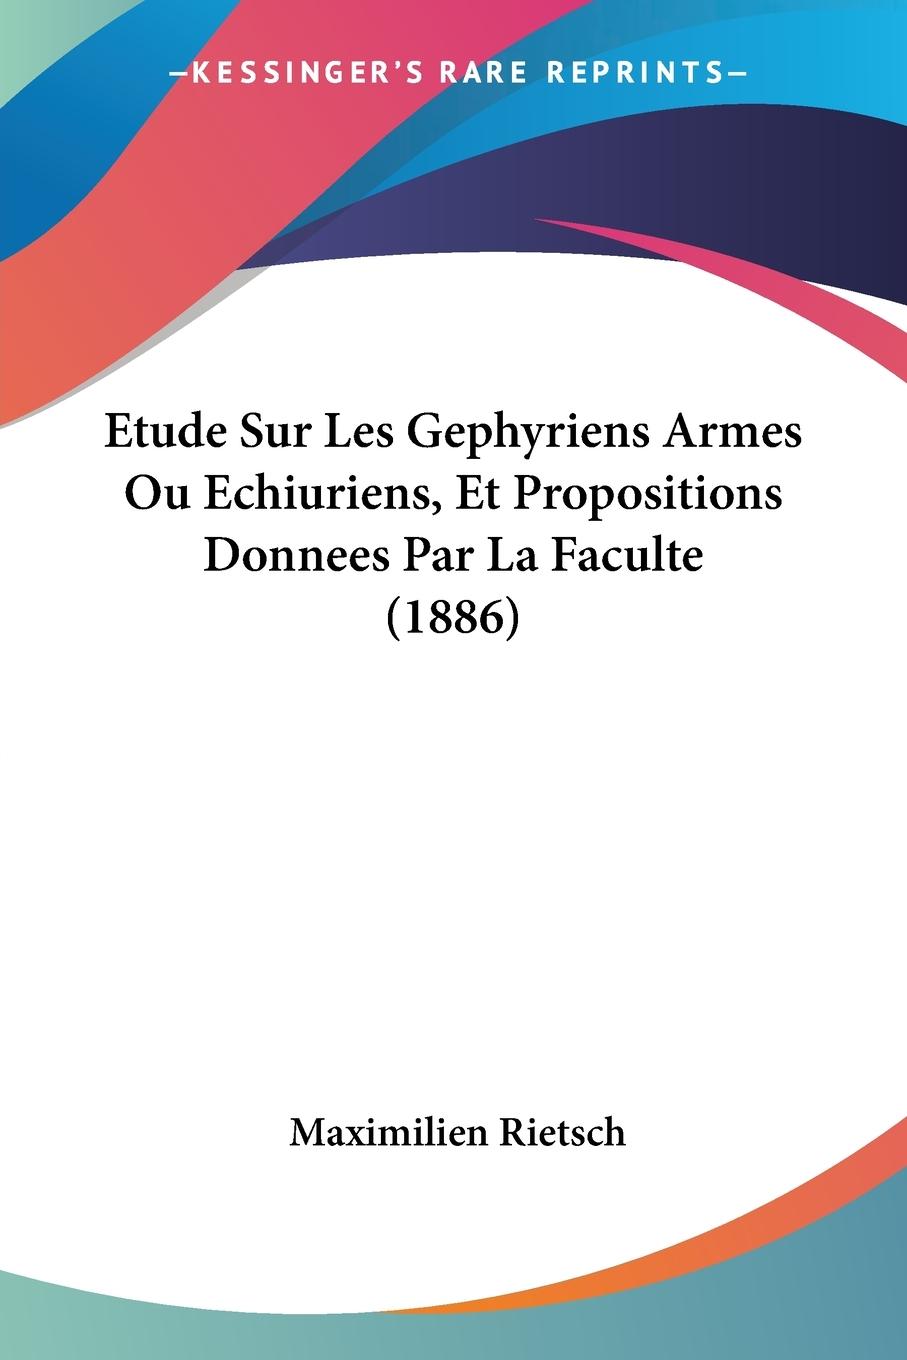 Etude Sur Les Gephyriens Armes Ou Echiuriens, Et Propositions Donnees Par La Faculte (1886) - Rietsch, Maximilien